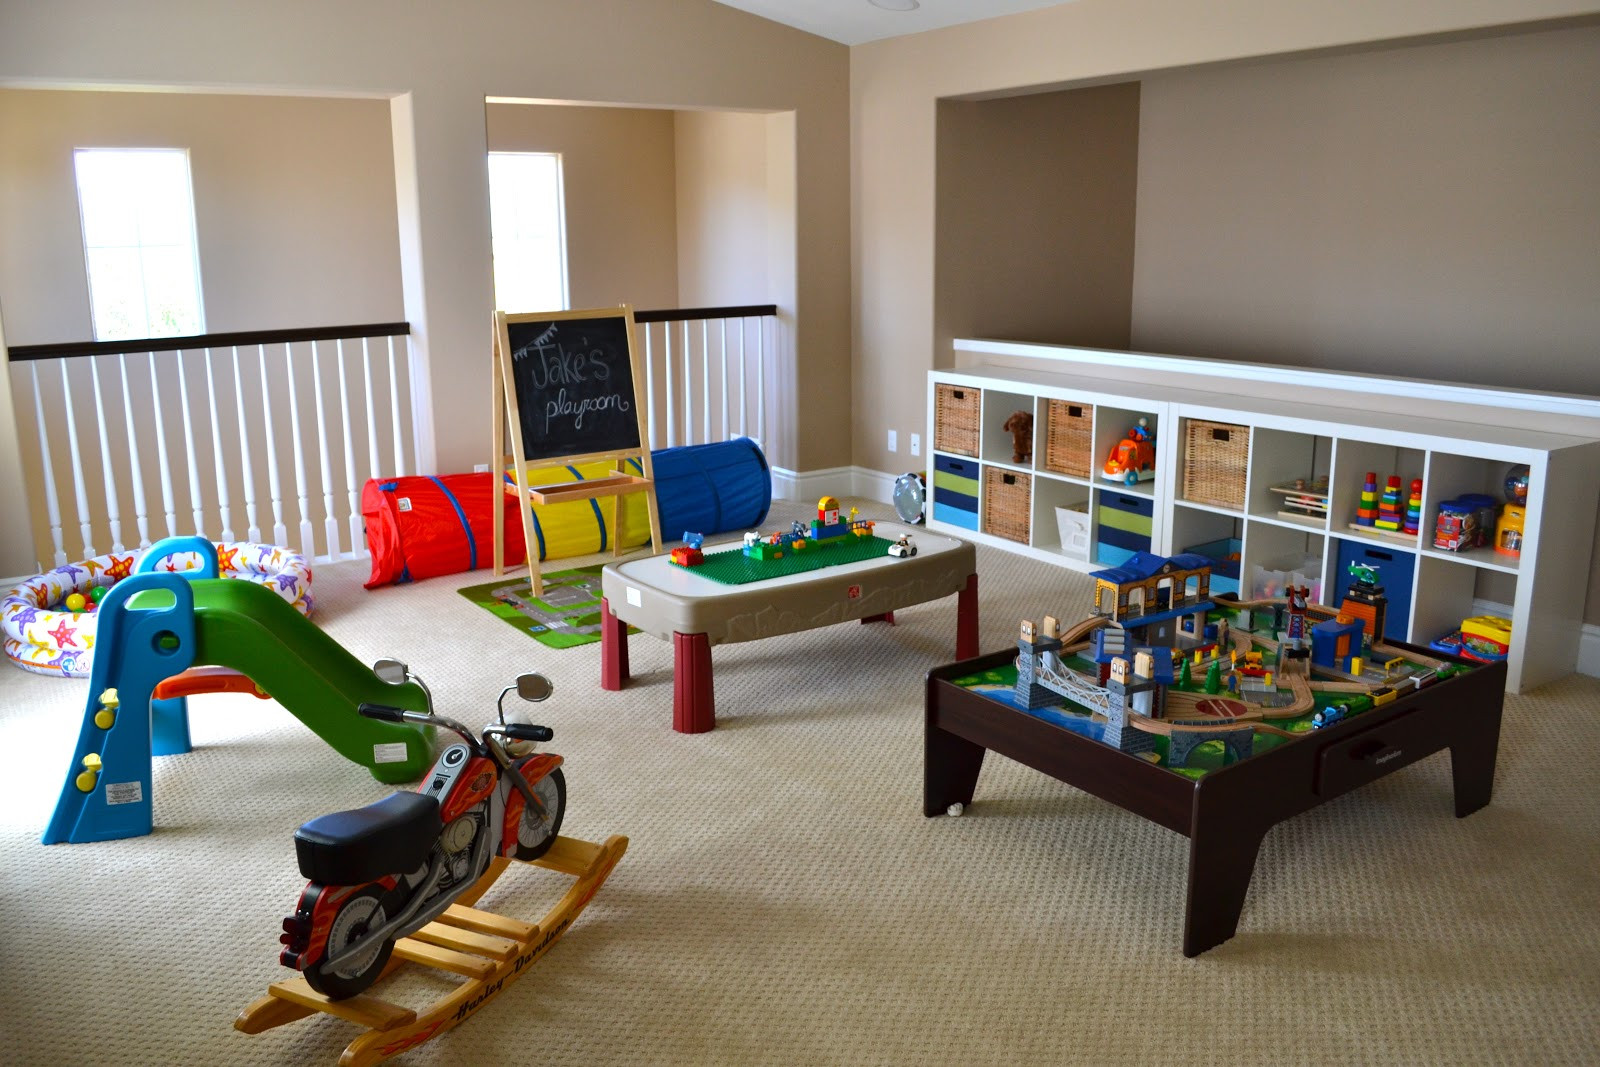 Playroom Ideas For Kids
 Kids Playroom Decorating Ideas – lifestyle tweets